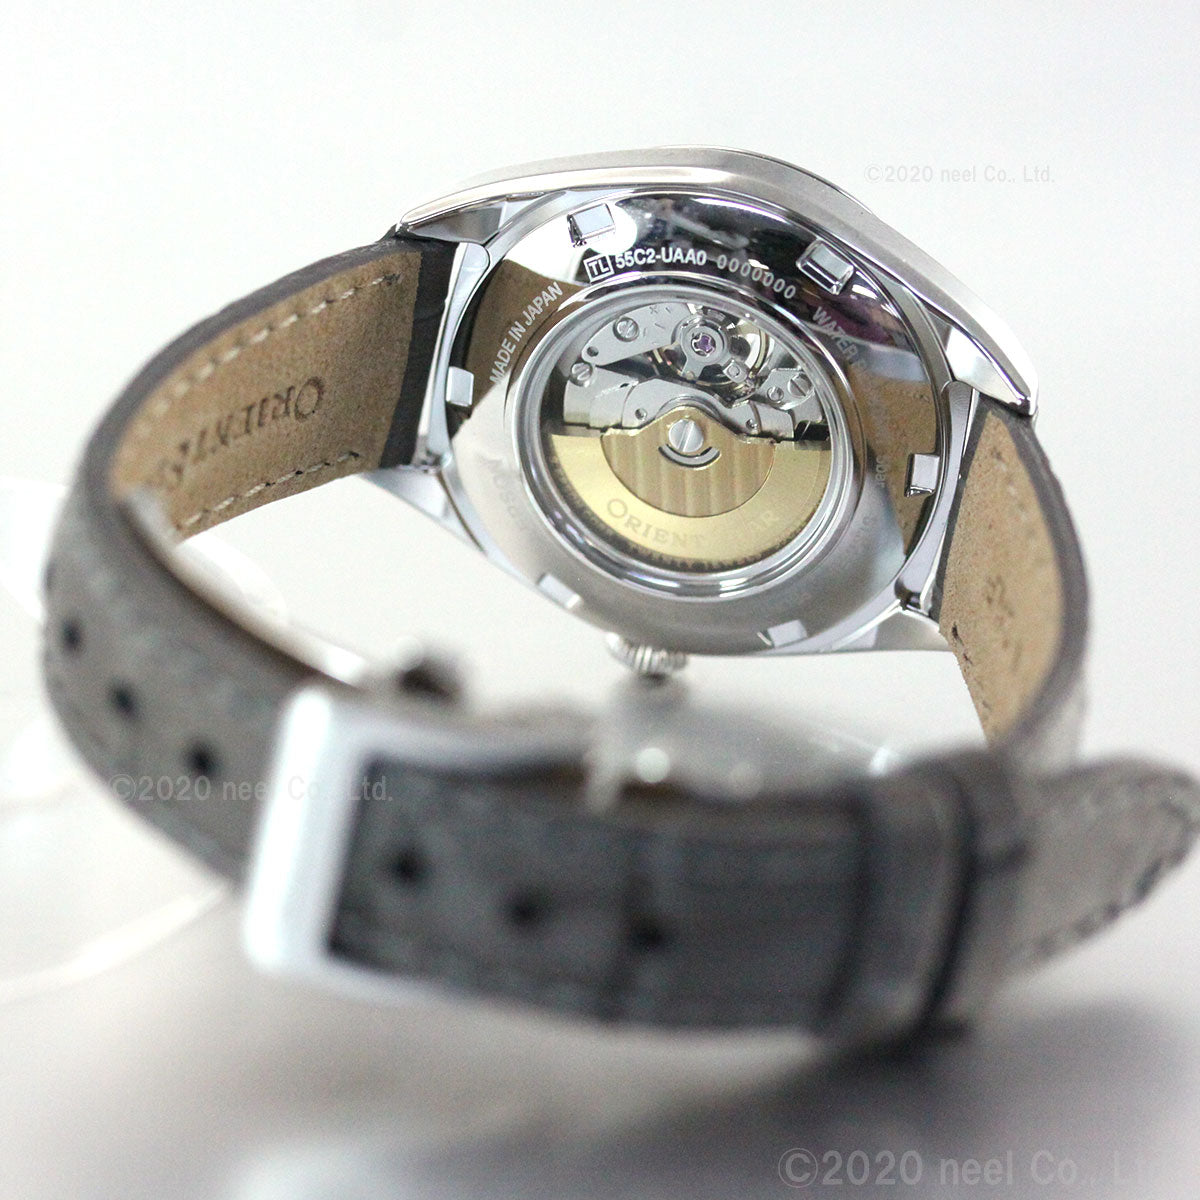 オリエントスター ORIENT STAR 腕時計 レディース 自動巻き 機械式 コンテンポラリー CONTEMPORALY セミスケルトン RK-ND0103N